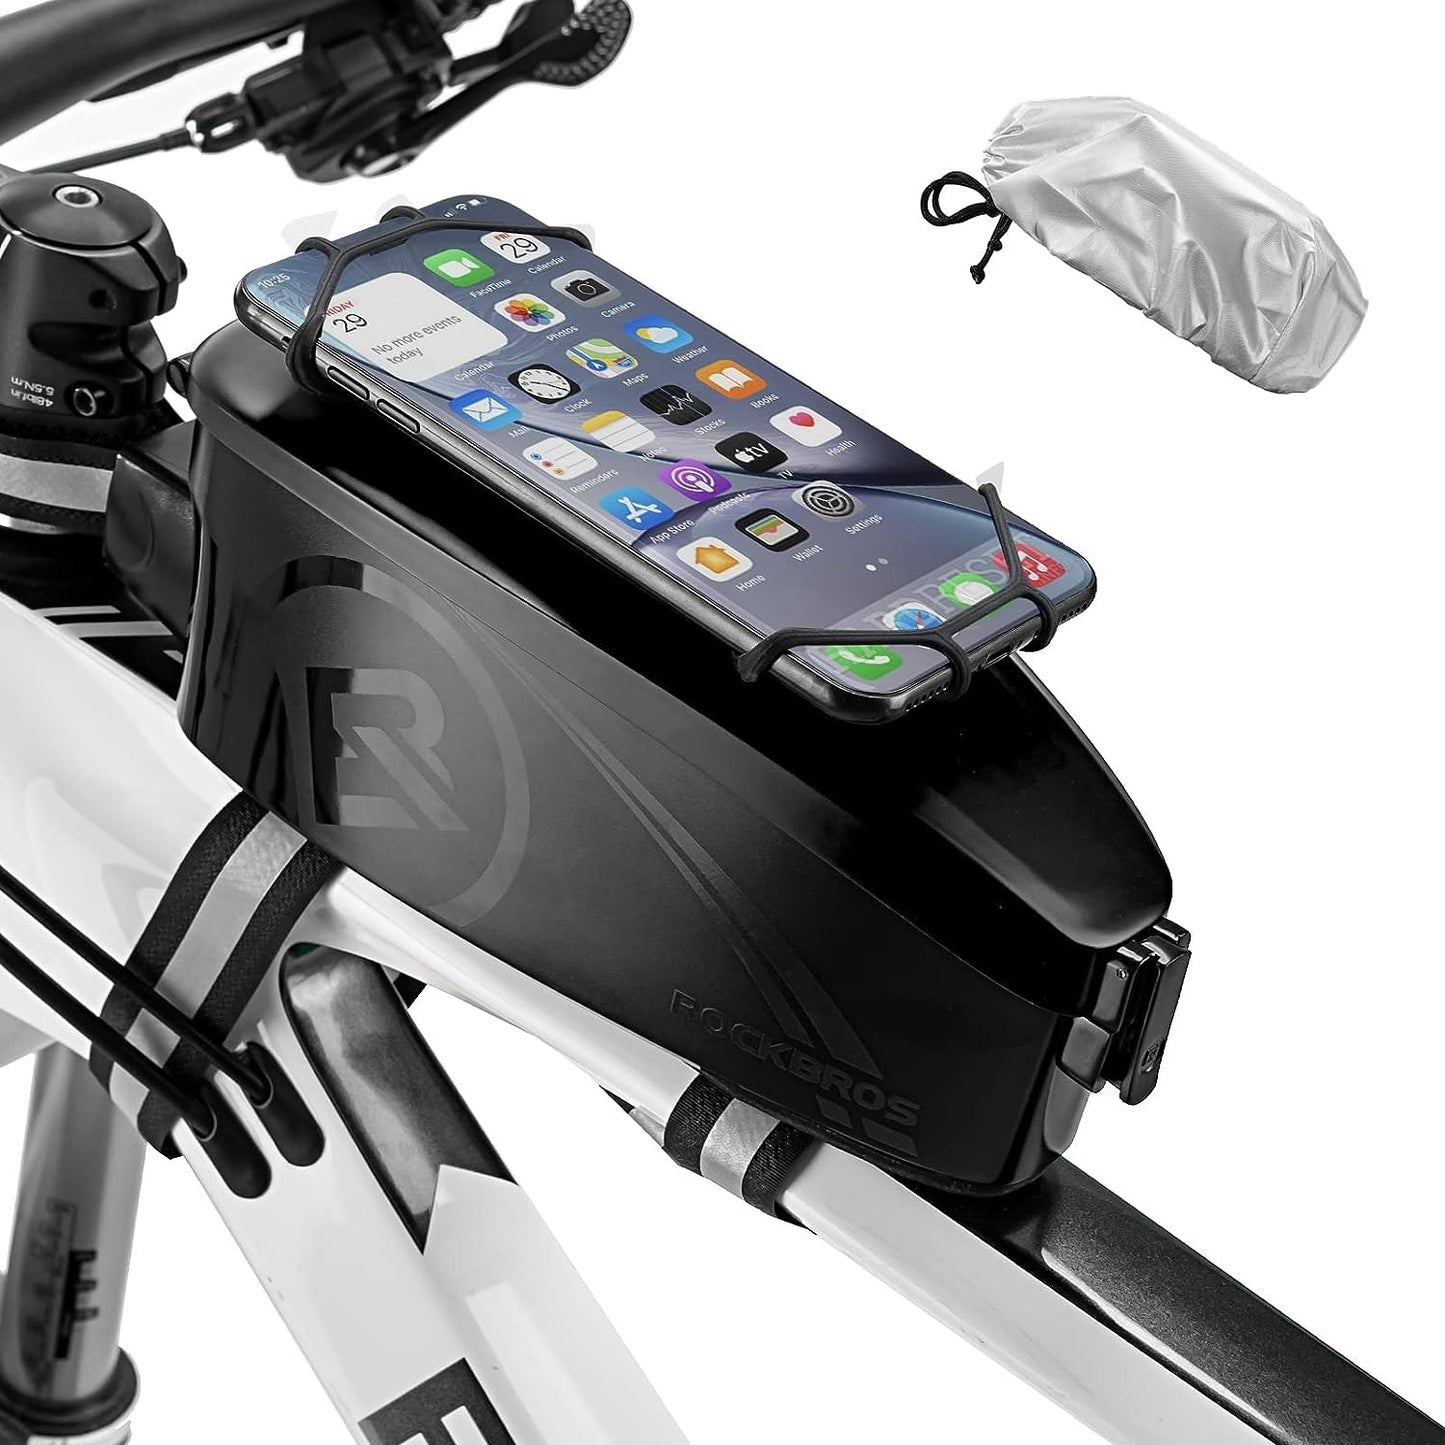 ROCKBROS cykeltaske steltaske med mobiltelefonholder til 4-6,5 tommer mobiltelefon